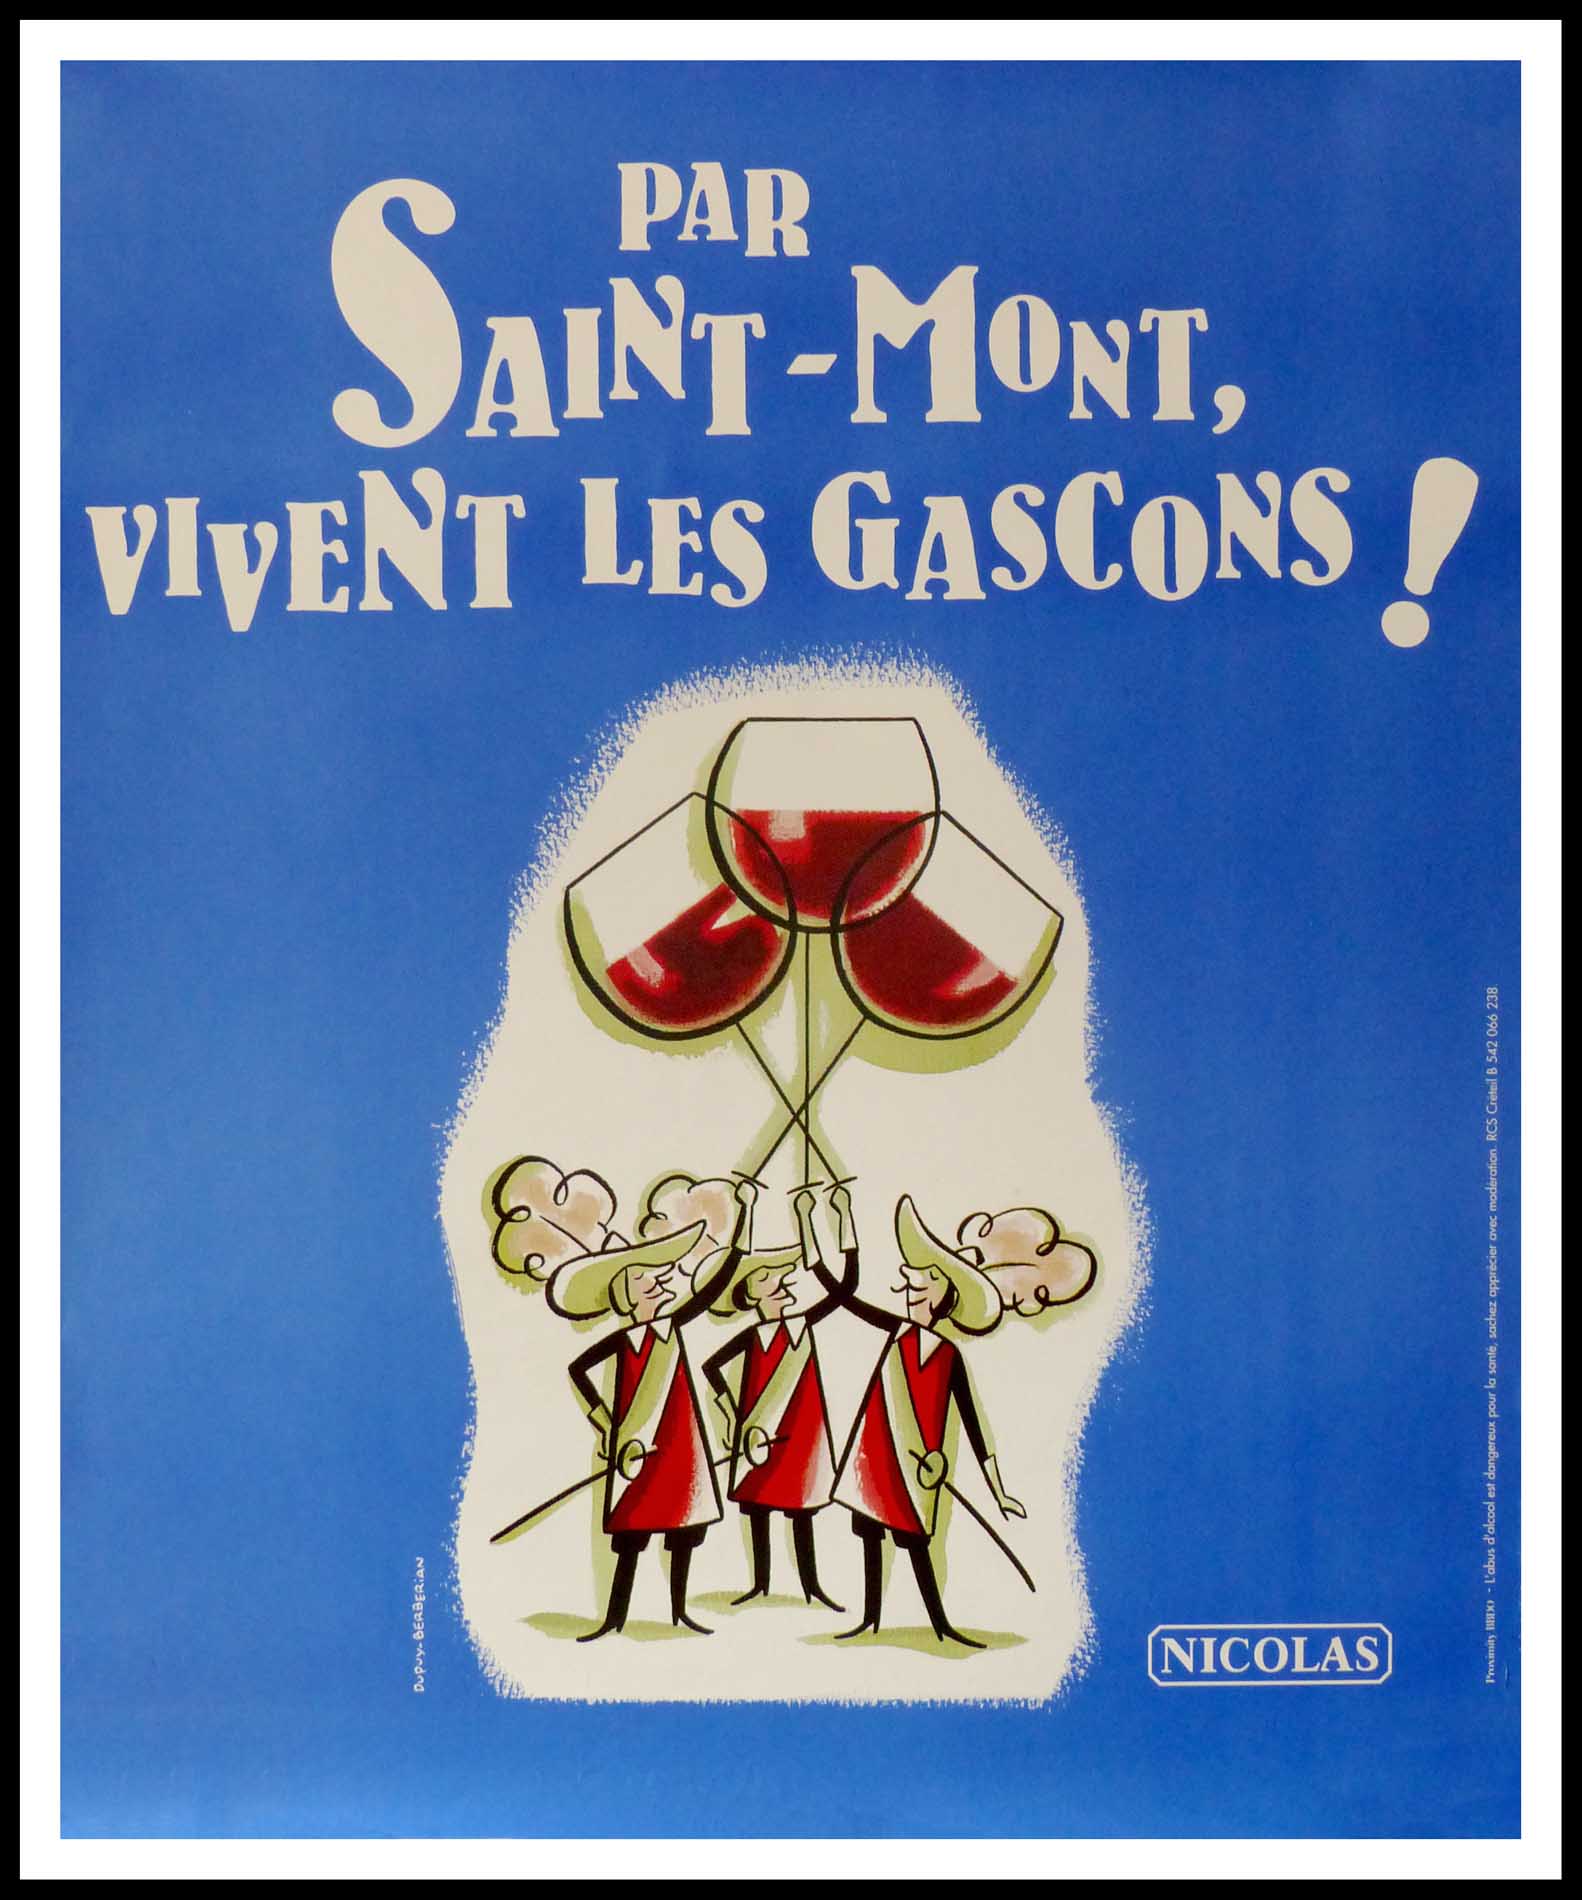 (alt="affiche originale vin PAR ST MONT VIVE LES GASCONS NICOLAS 98 x 80 cm OFF LINEN Condition A+ circa 1990 DUPUY-BERBERIAN printed by PROXIMITY")NICOLAS,